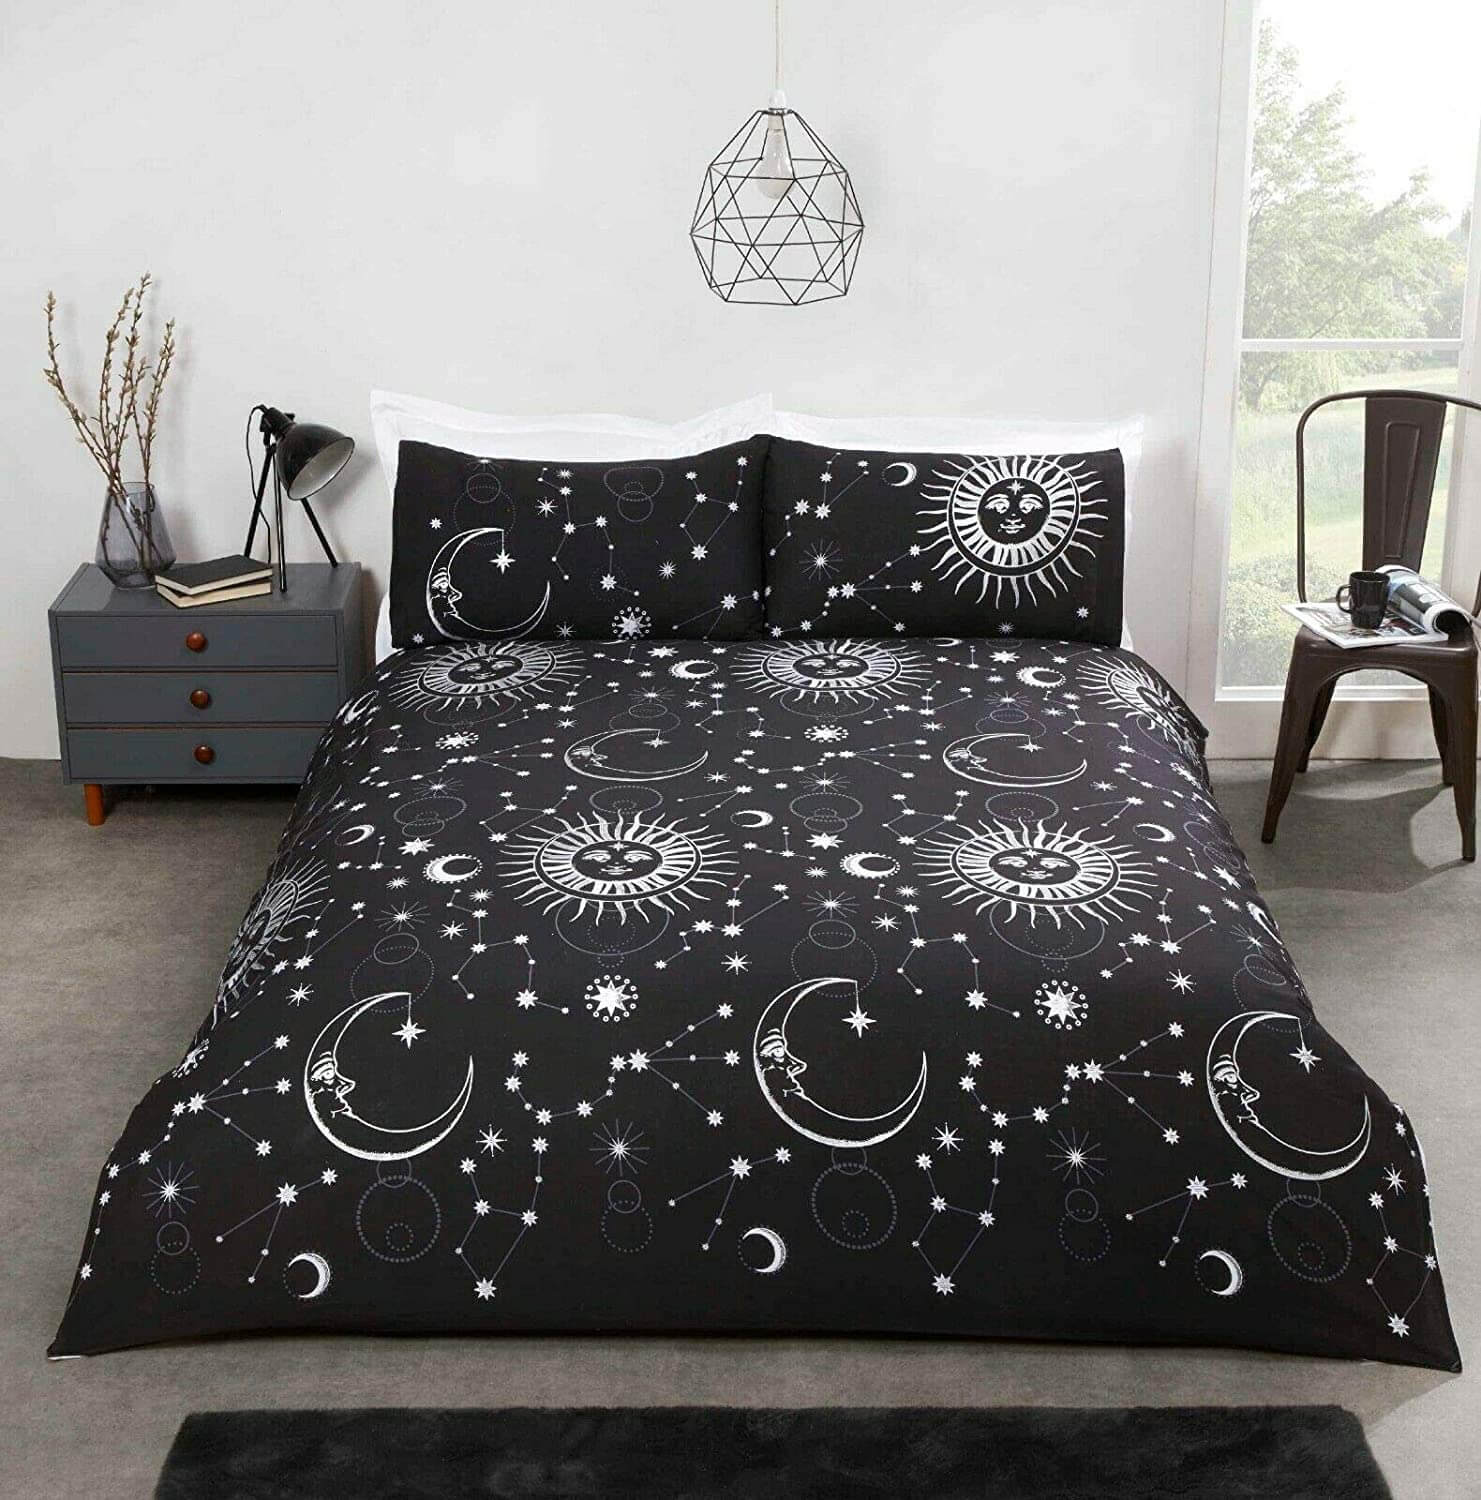 Bộ drap giường mang cảm hứng từ bầu trời đêm